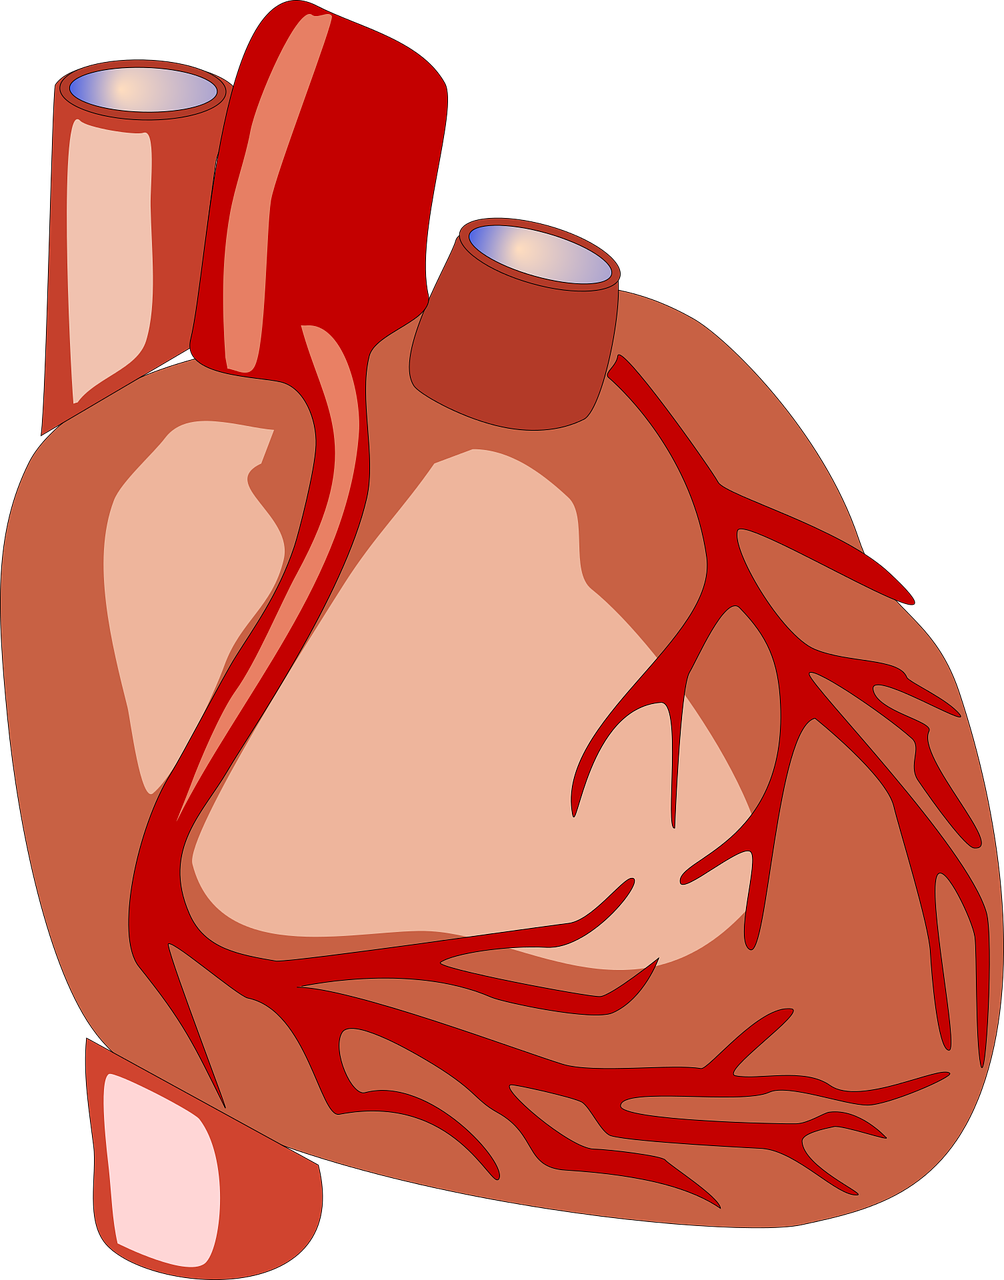 《2020 ACC/AHA心脏瓣膜病管理指南》解读